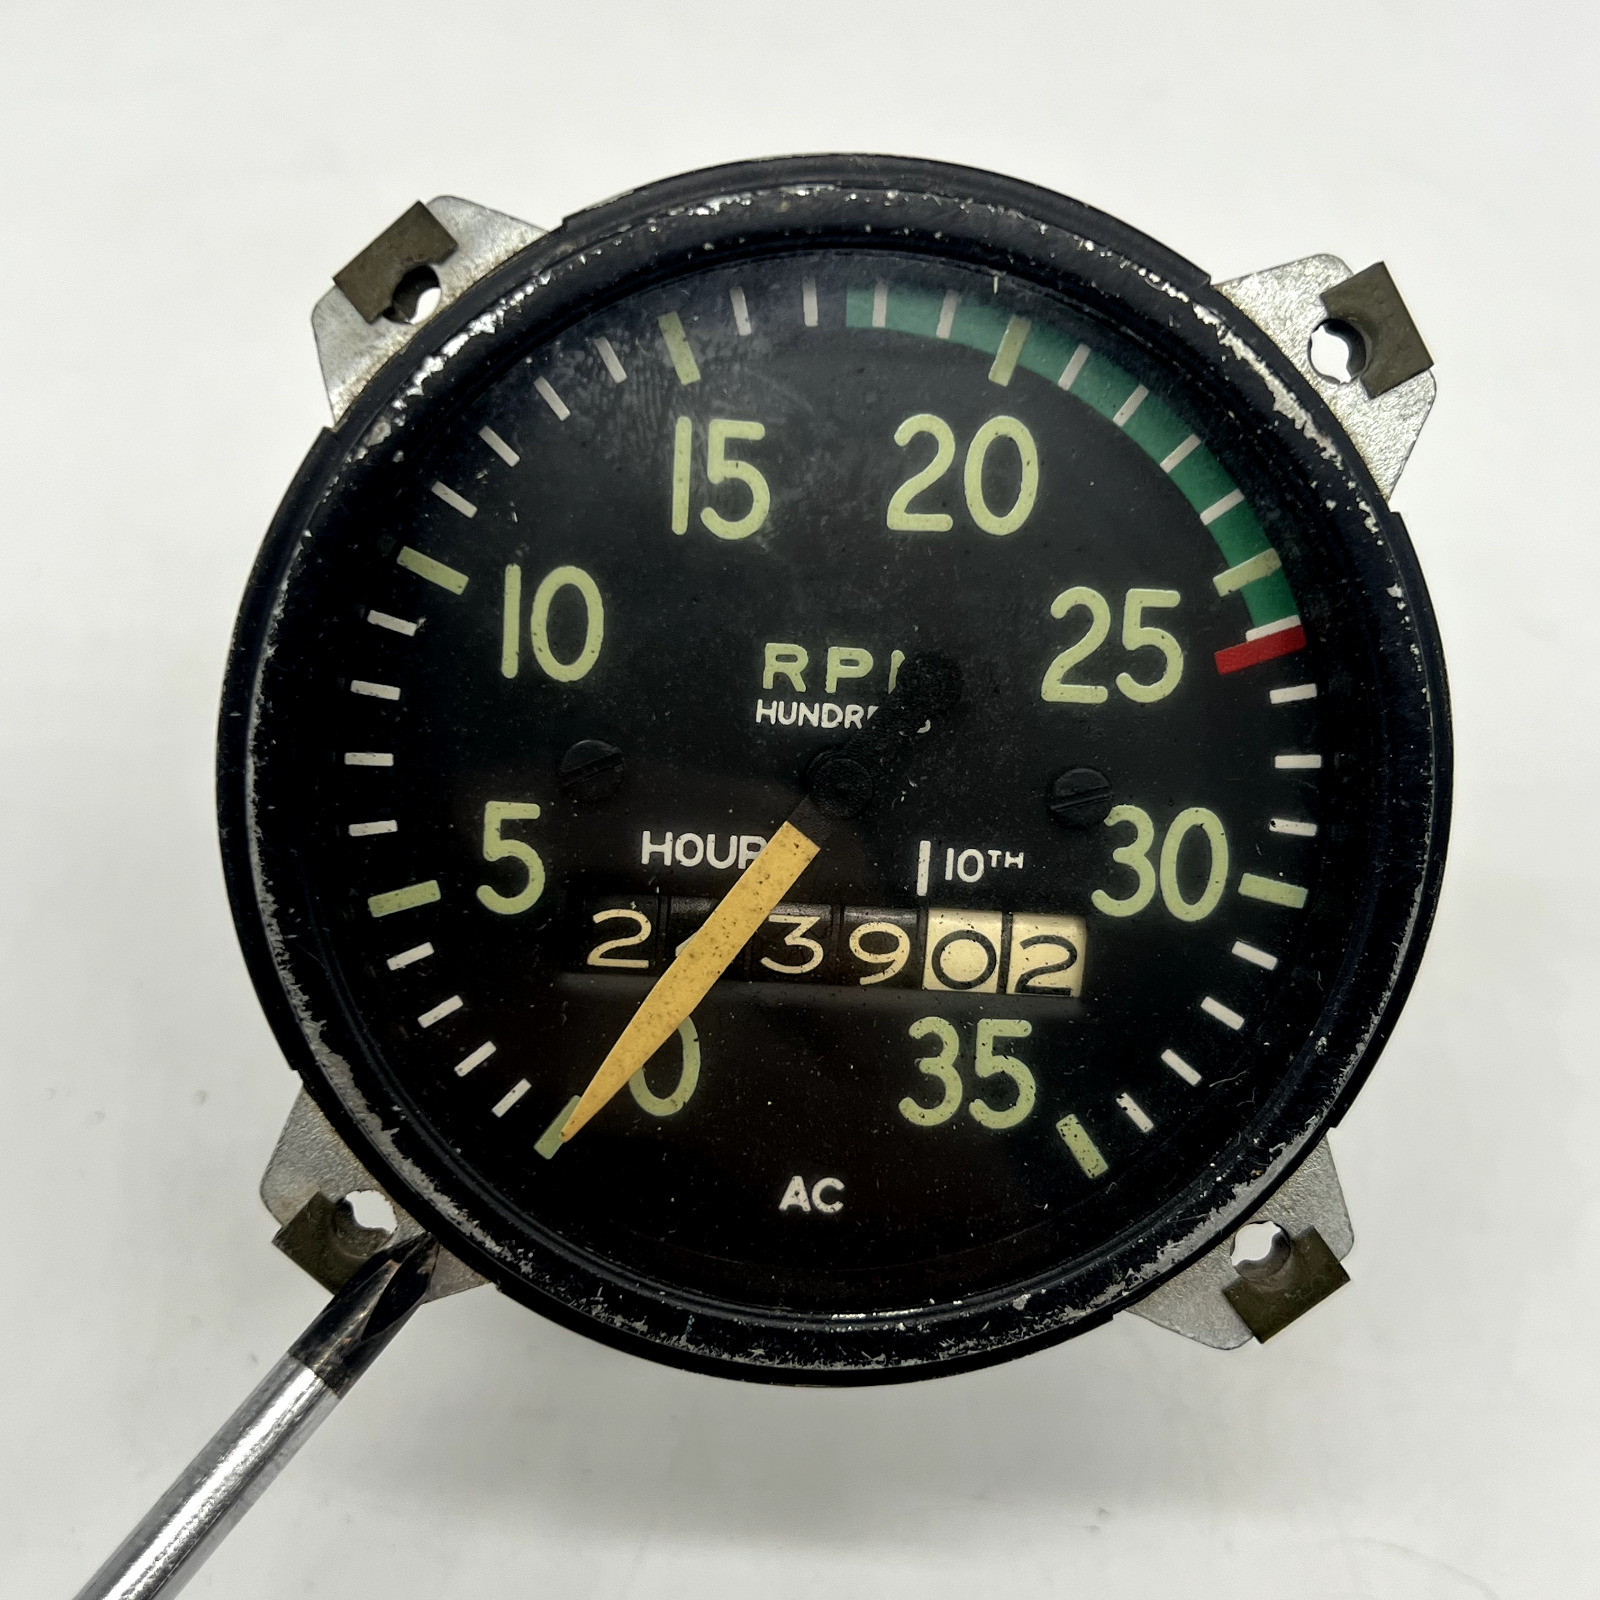 AC DIV GMC Vintage Aircraft Tachometer RPM Gauge hour meter cessna BEECH CRAFT